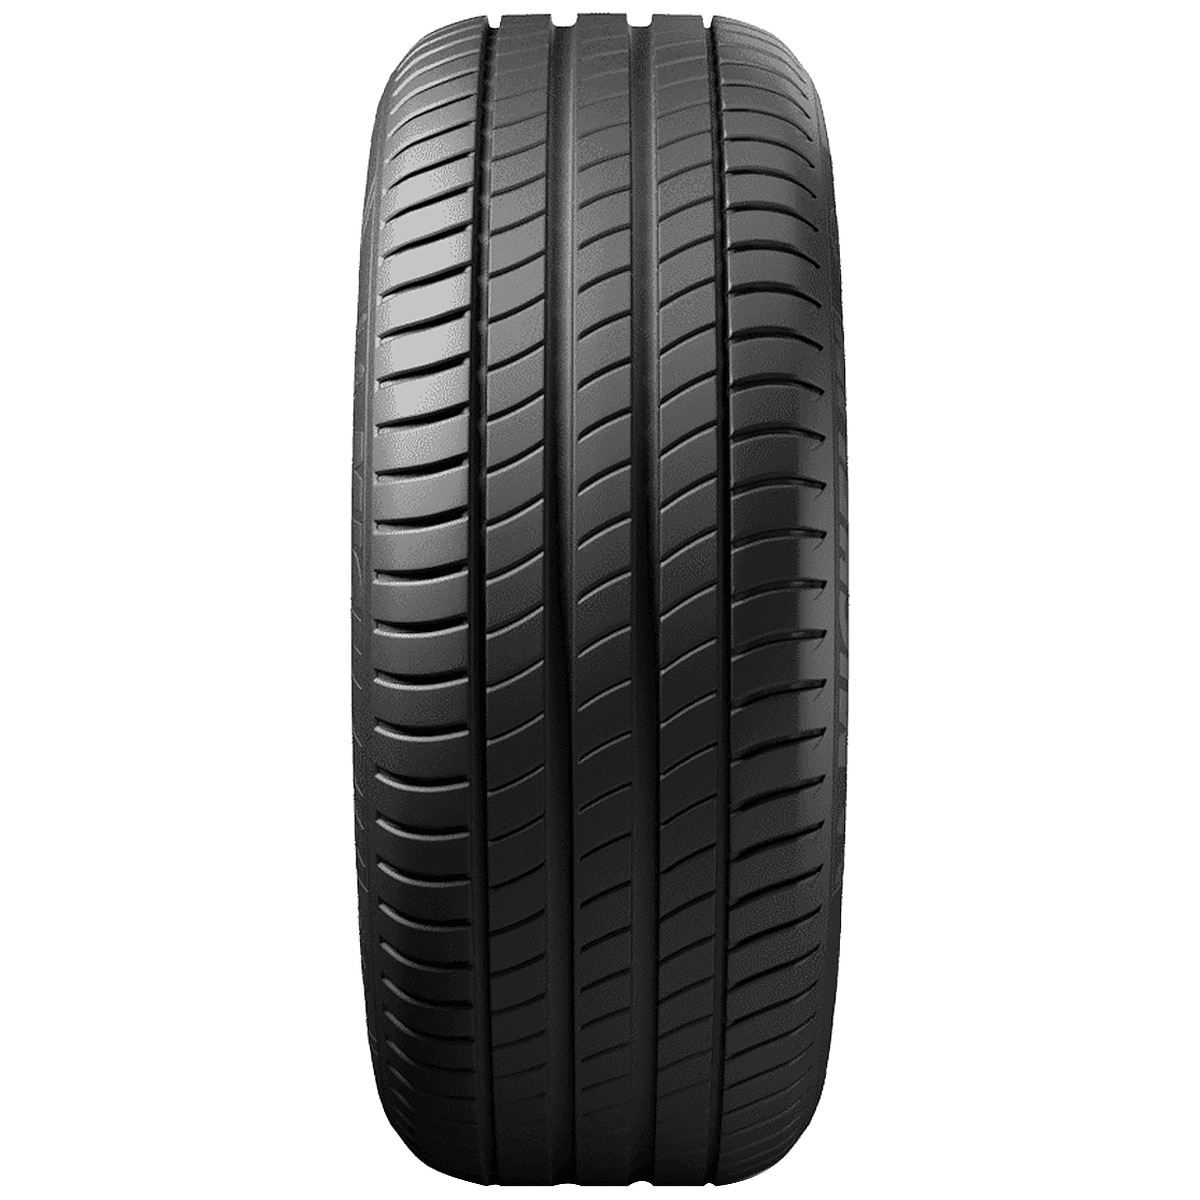 225/45R18 95Y PRIMACY - Tyre